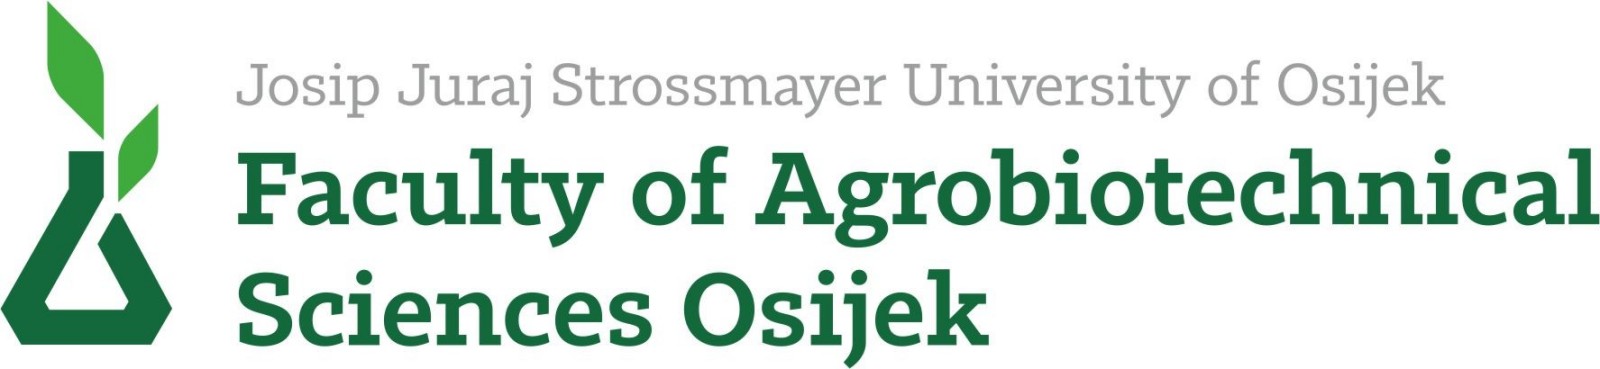 Josip Juraj Strossmayer University in Osijek, Faculty of Agrobiotechnical Sciences Osijek logo